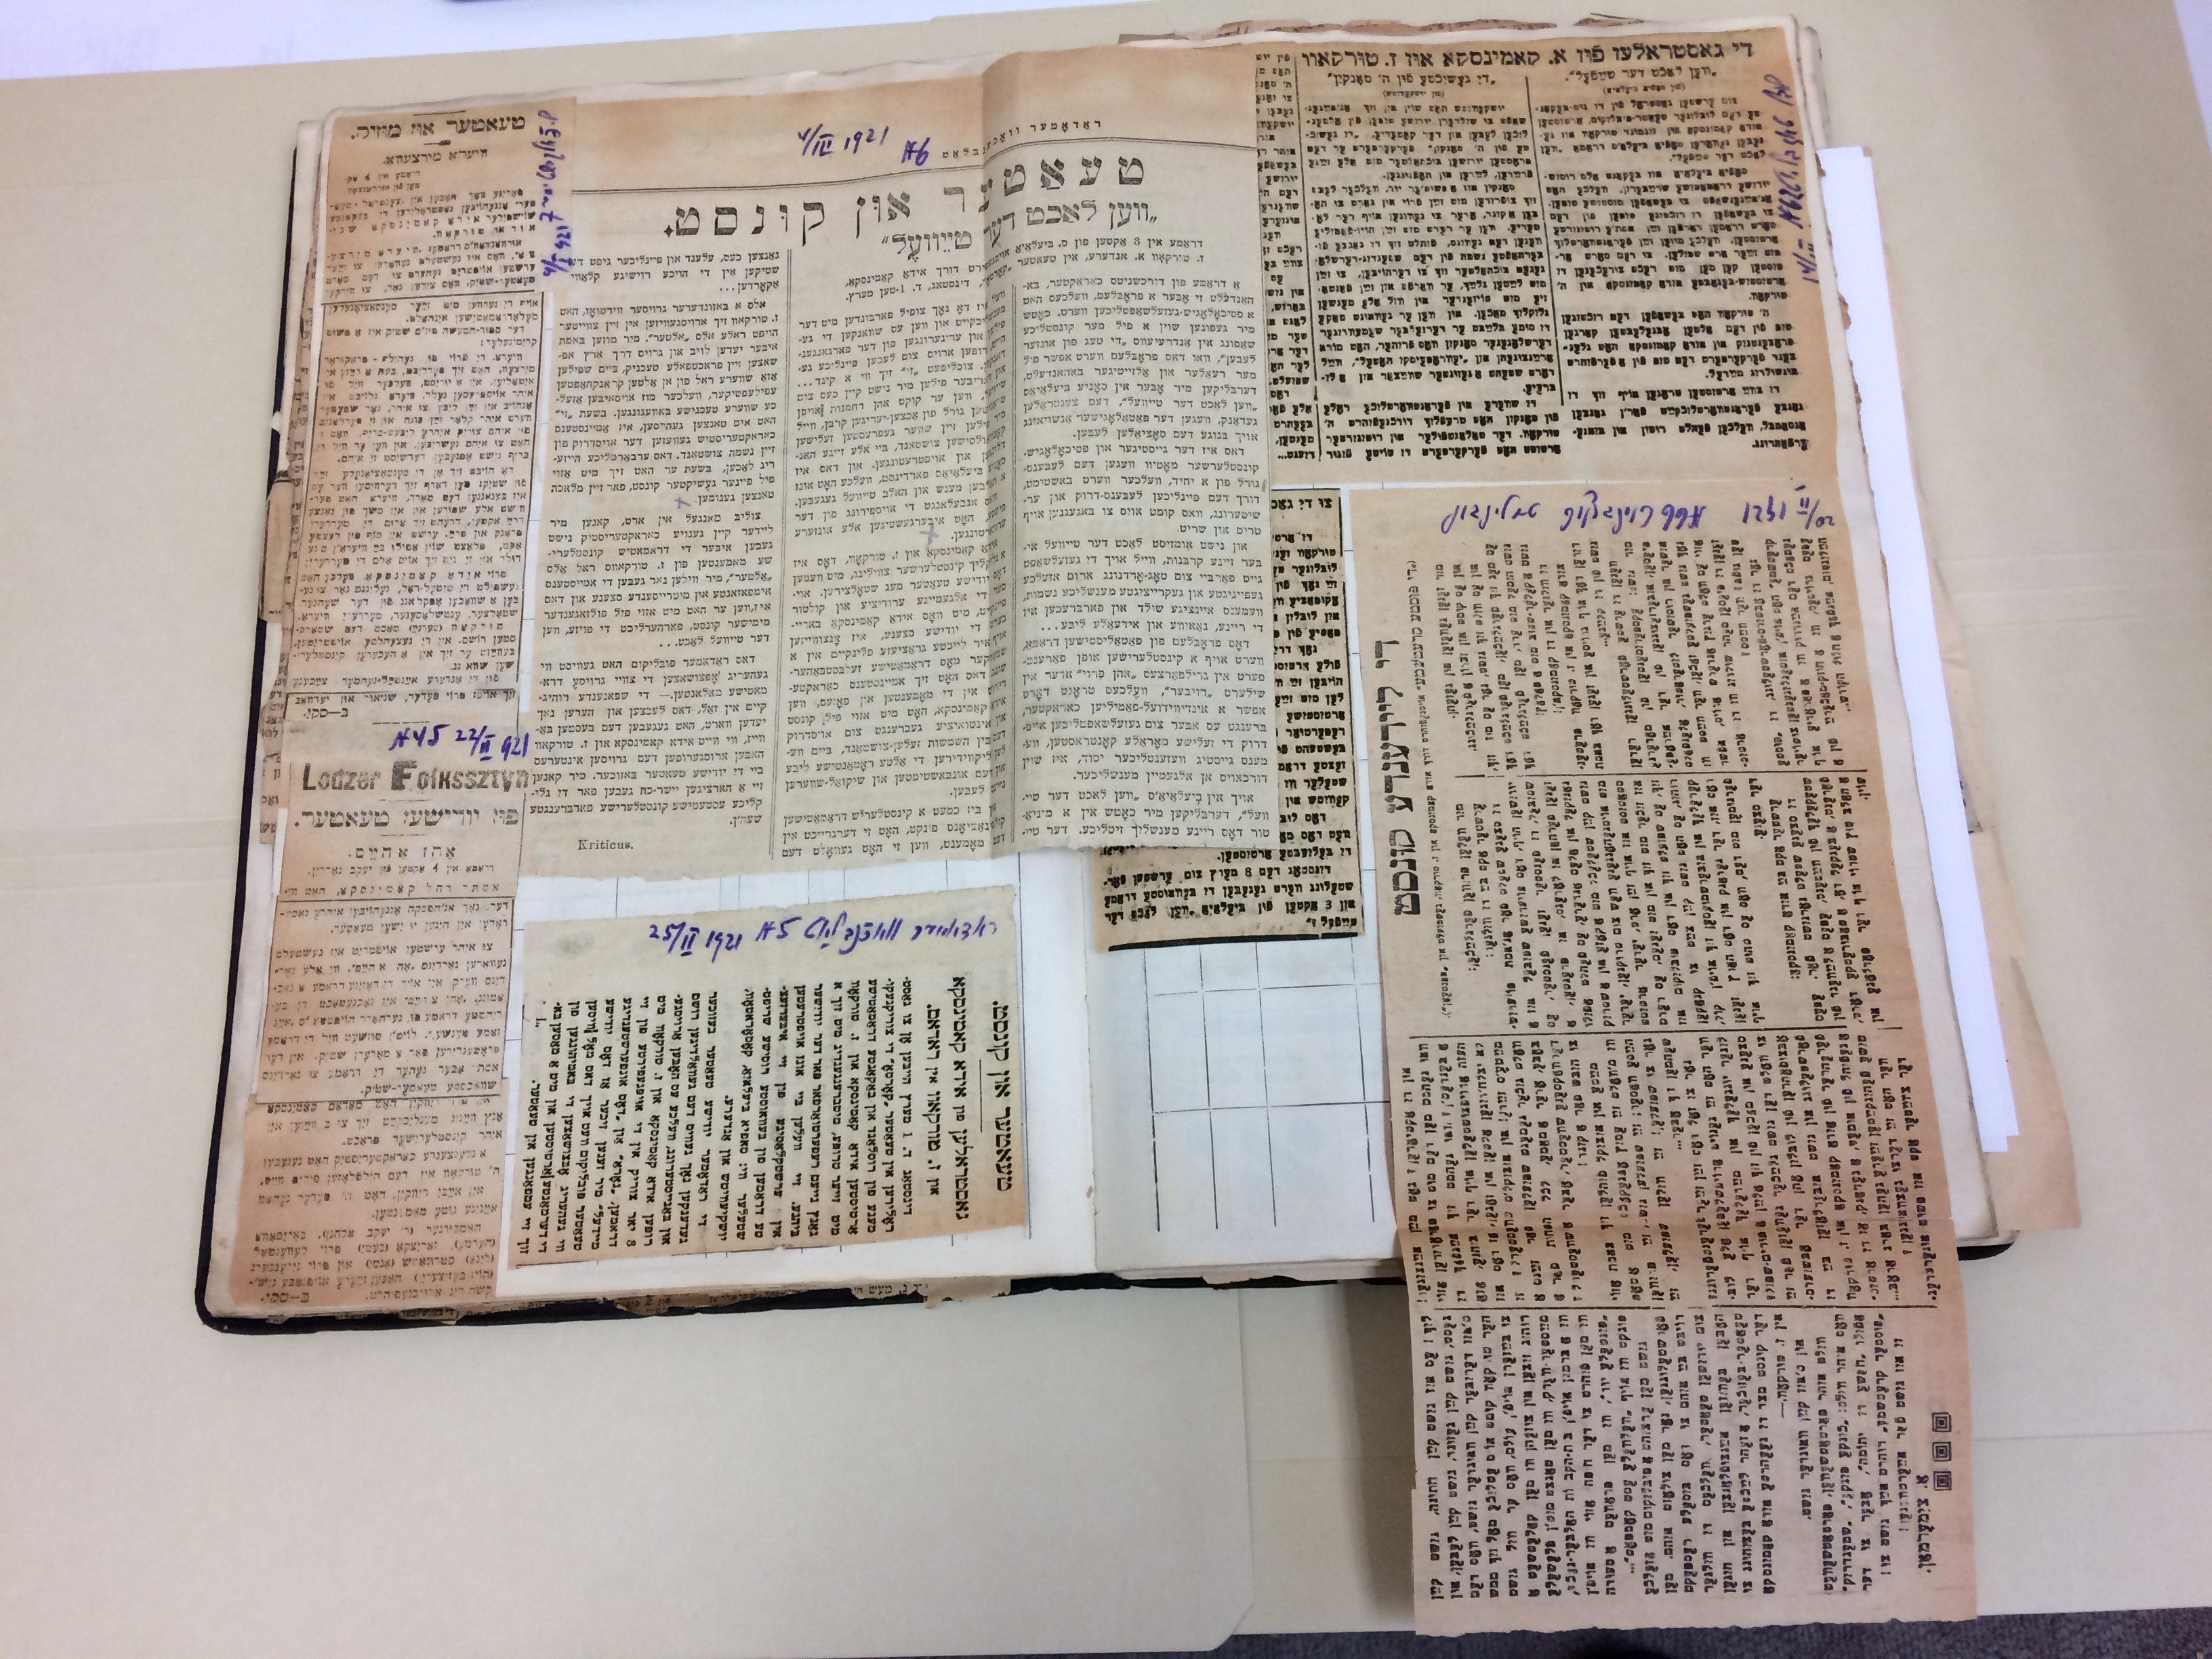 Documentos judaicos que se achava terem sido perdidos durante o Holocausto